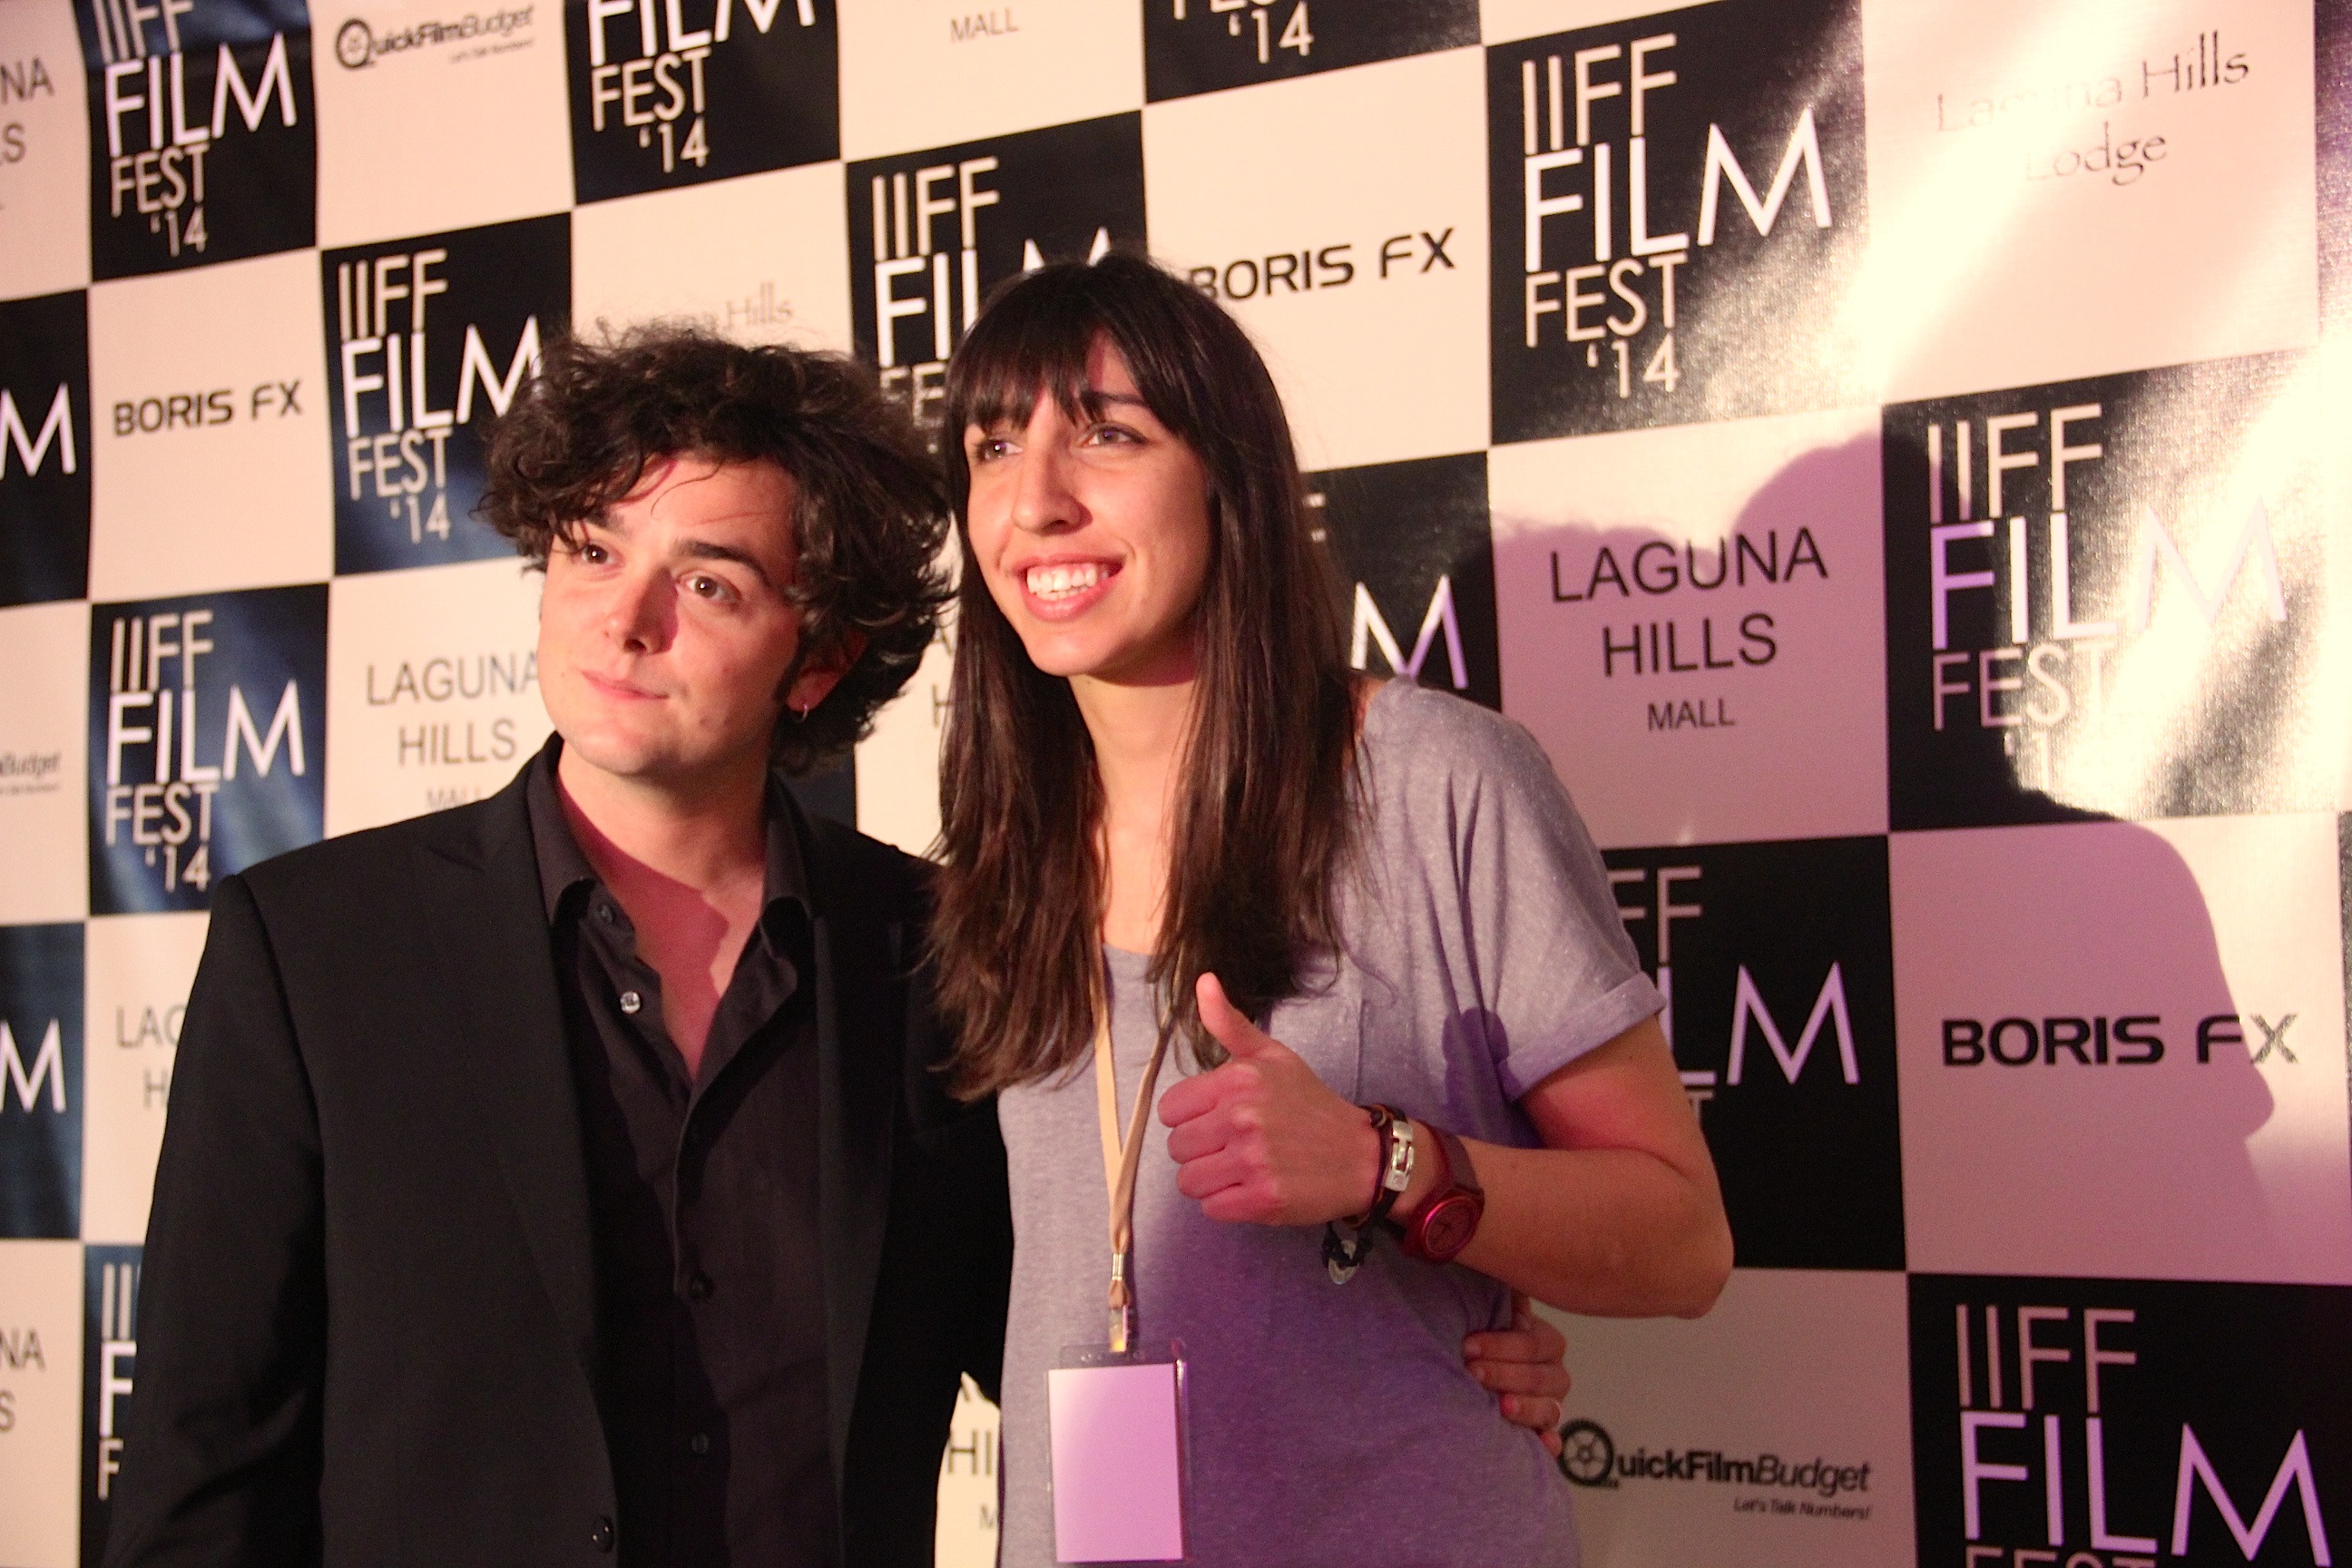 Irvine International Film Festival